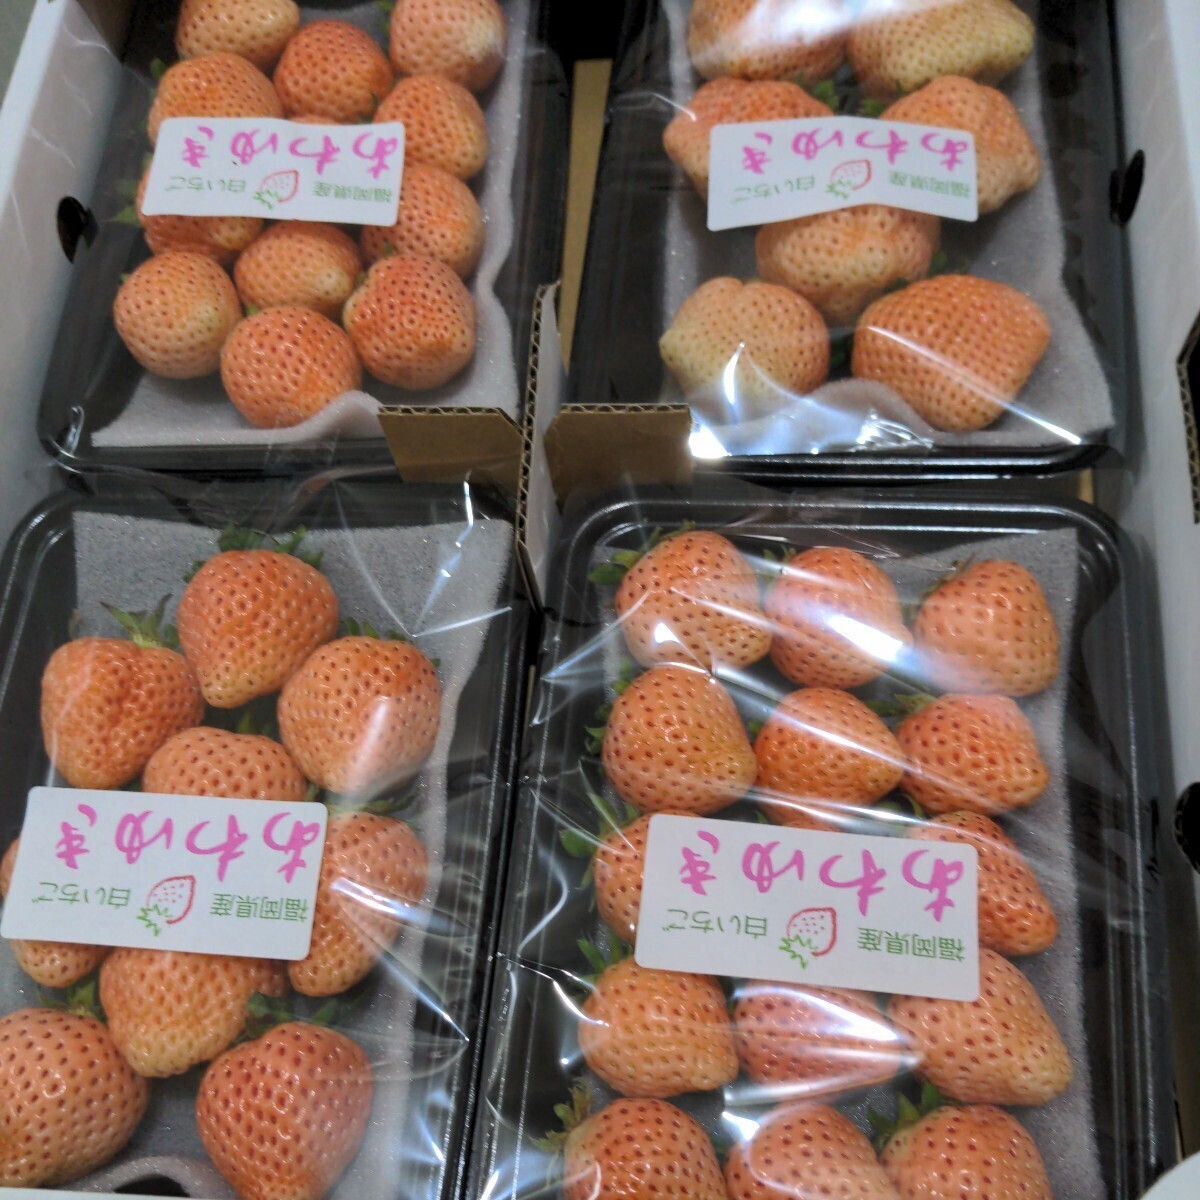 福岡県産（あわゆき）【白イチゴ】4パック入り（高級いちごですので美味しいです。)の画像1